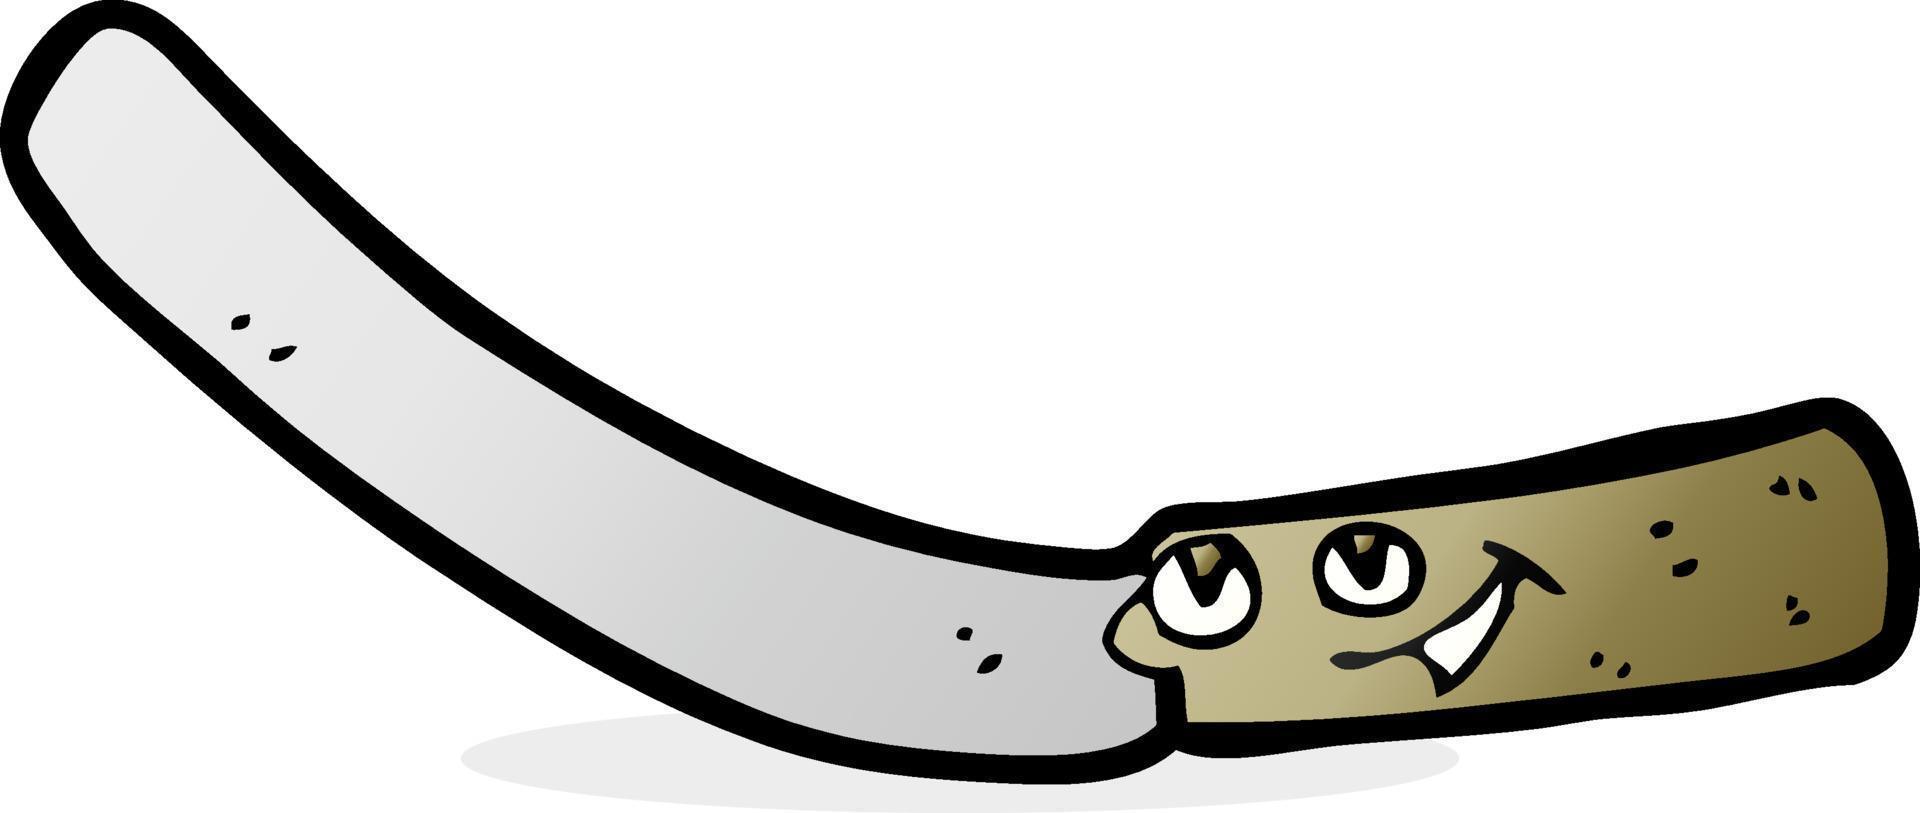 cuchillo de cocina de dibujos animados vector